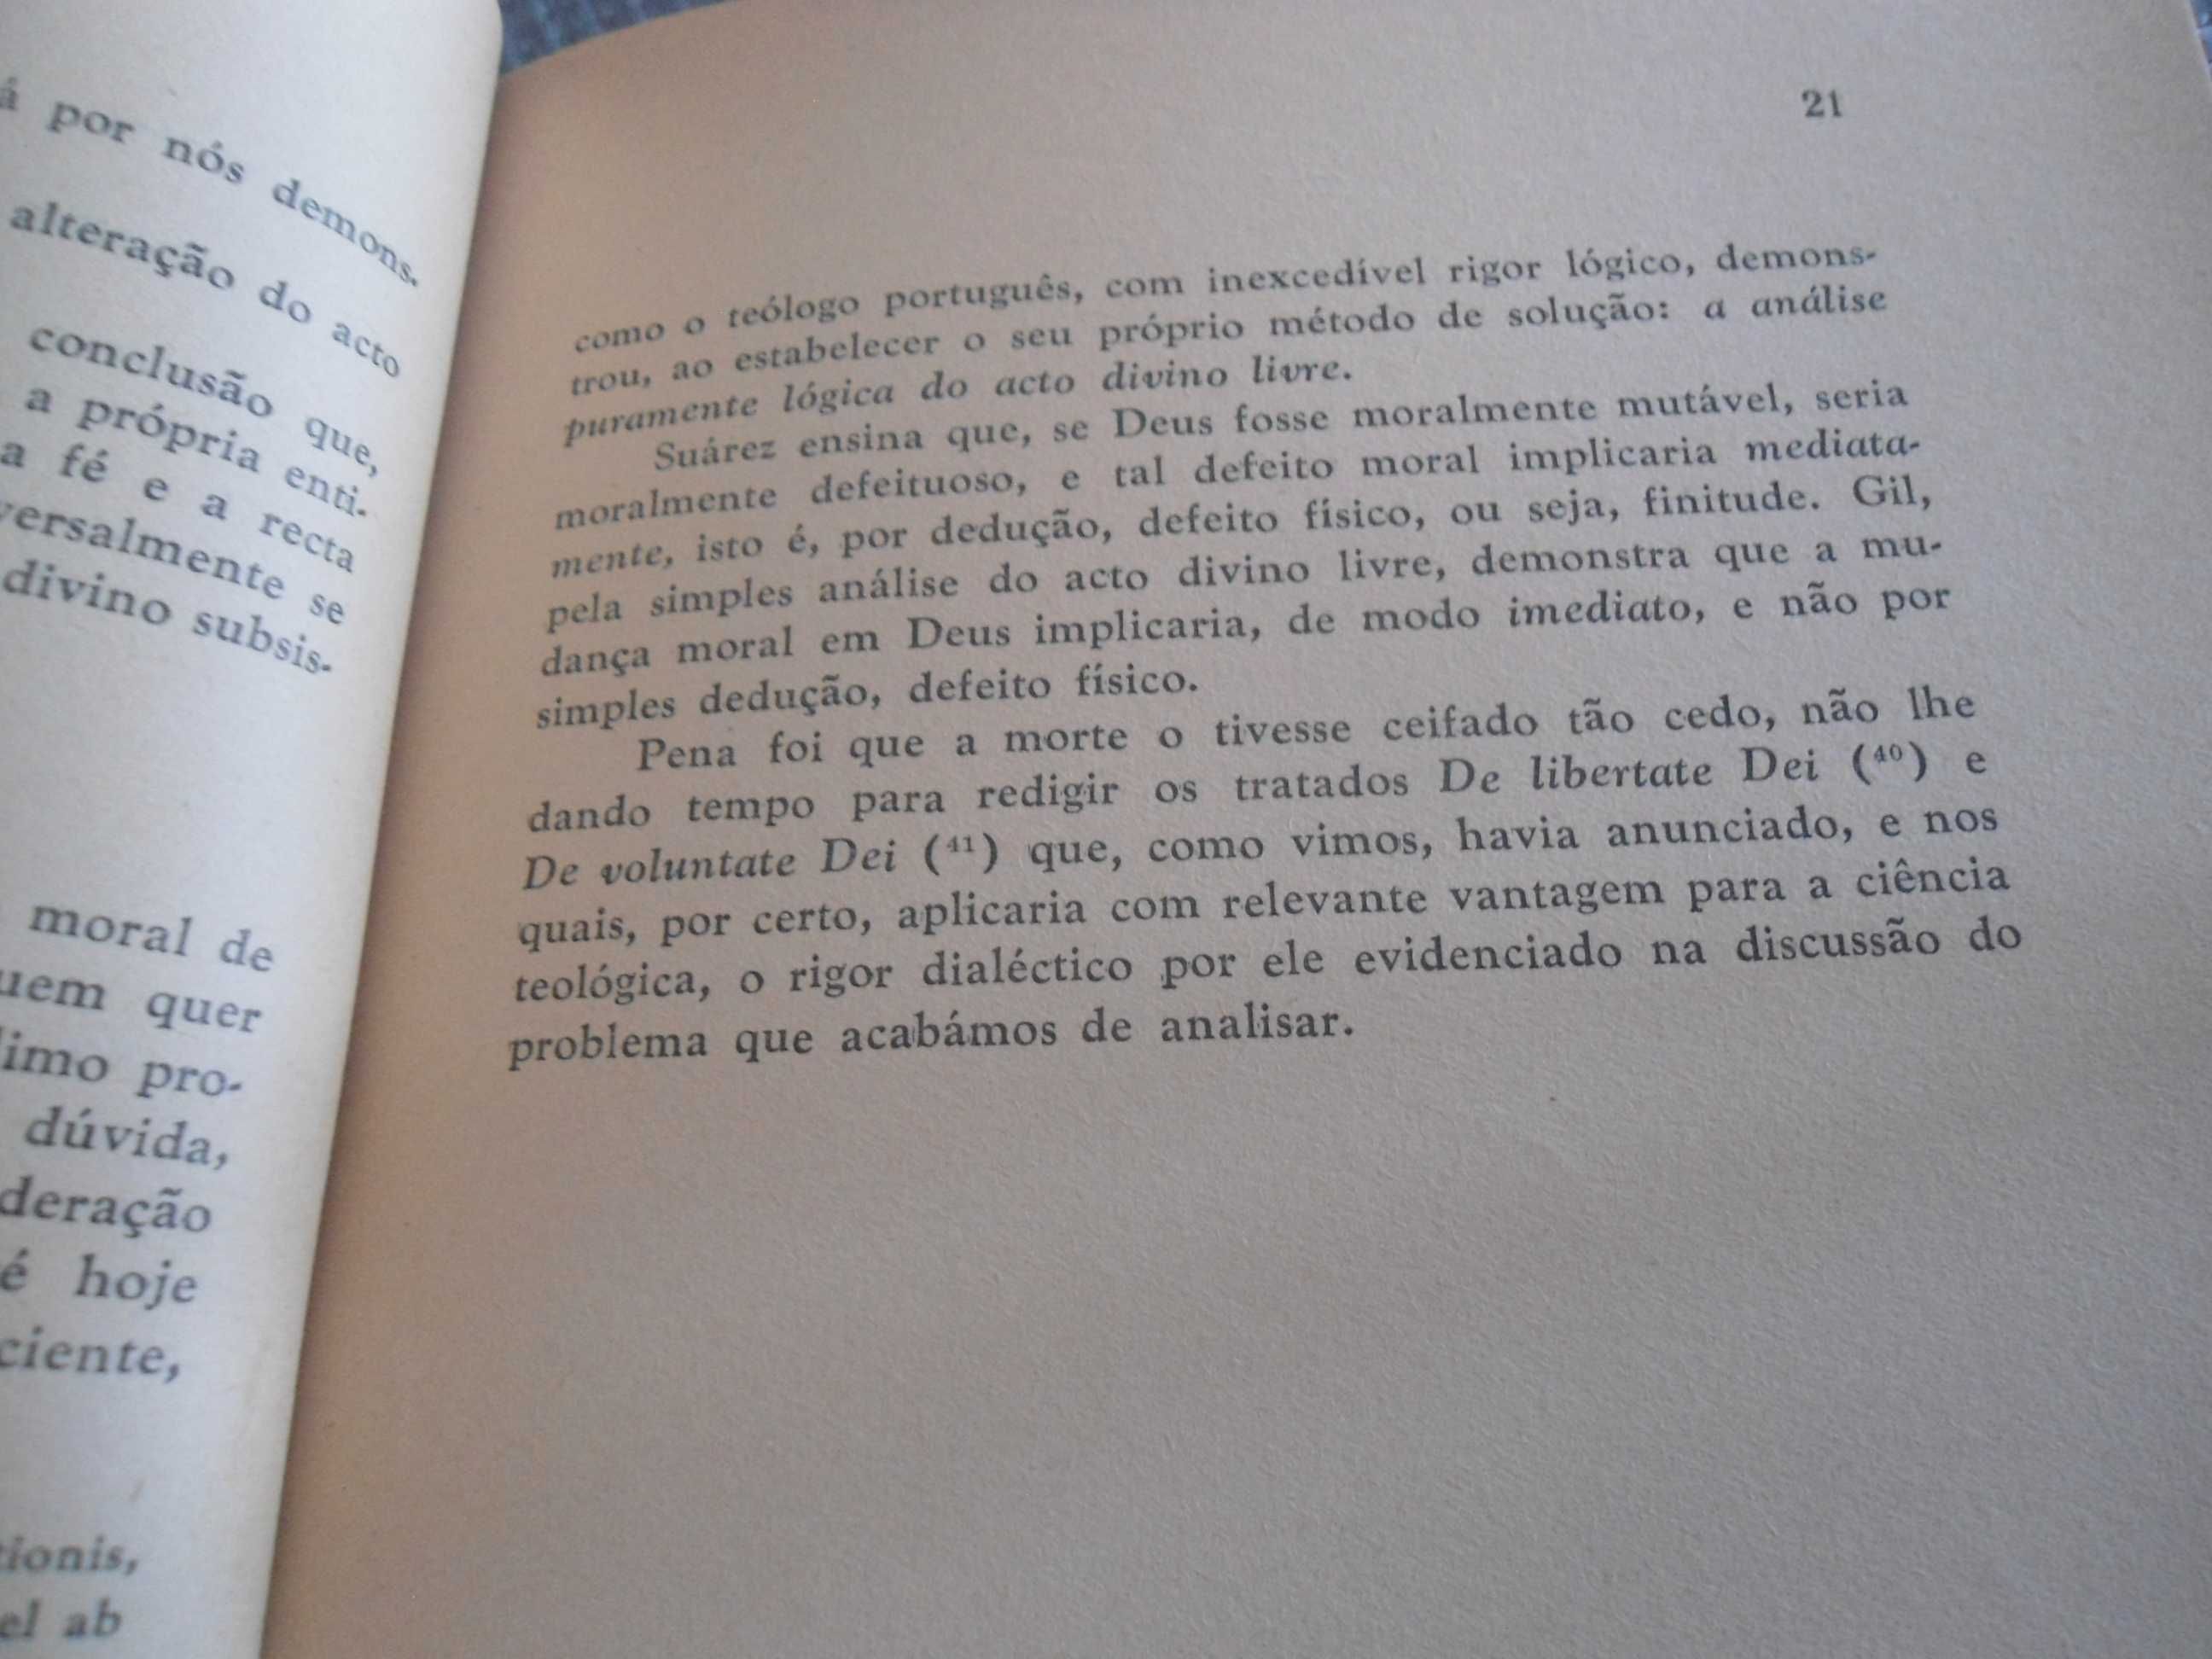 A Imutabilidade Moral de Deus ... por Joaquim Ferreira Gomes (1960)